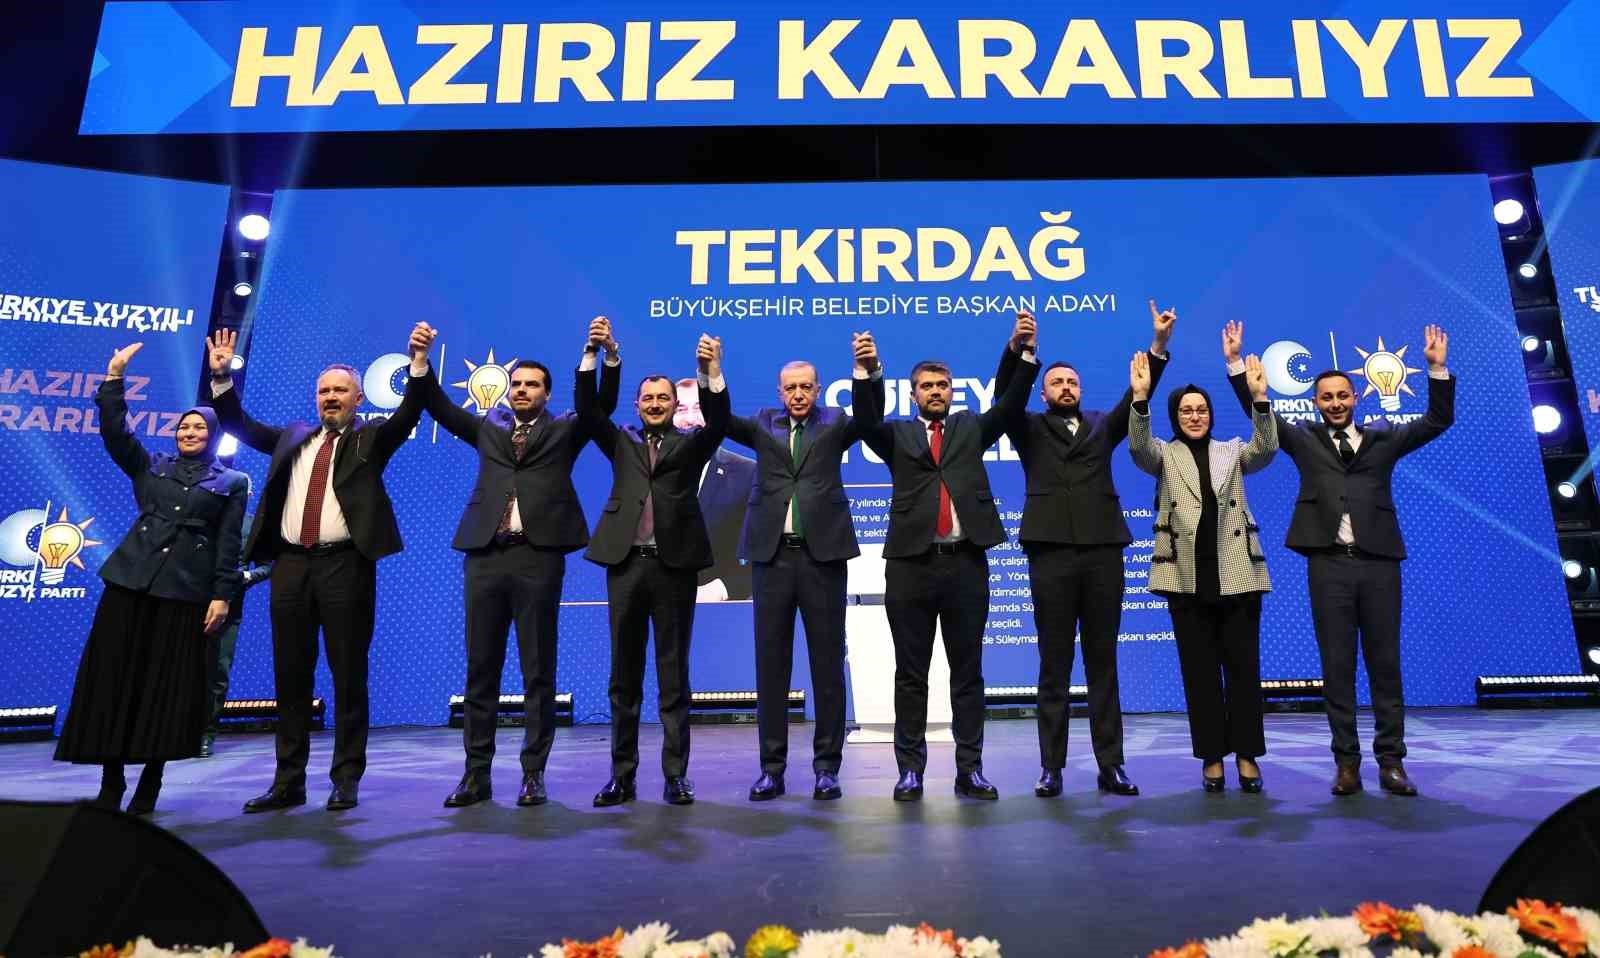 AK Parti, Tekirdağ Büyükşehir Belediye Başkan Adayı olarak Cüneyt Yüksel’i seçti.